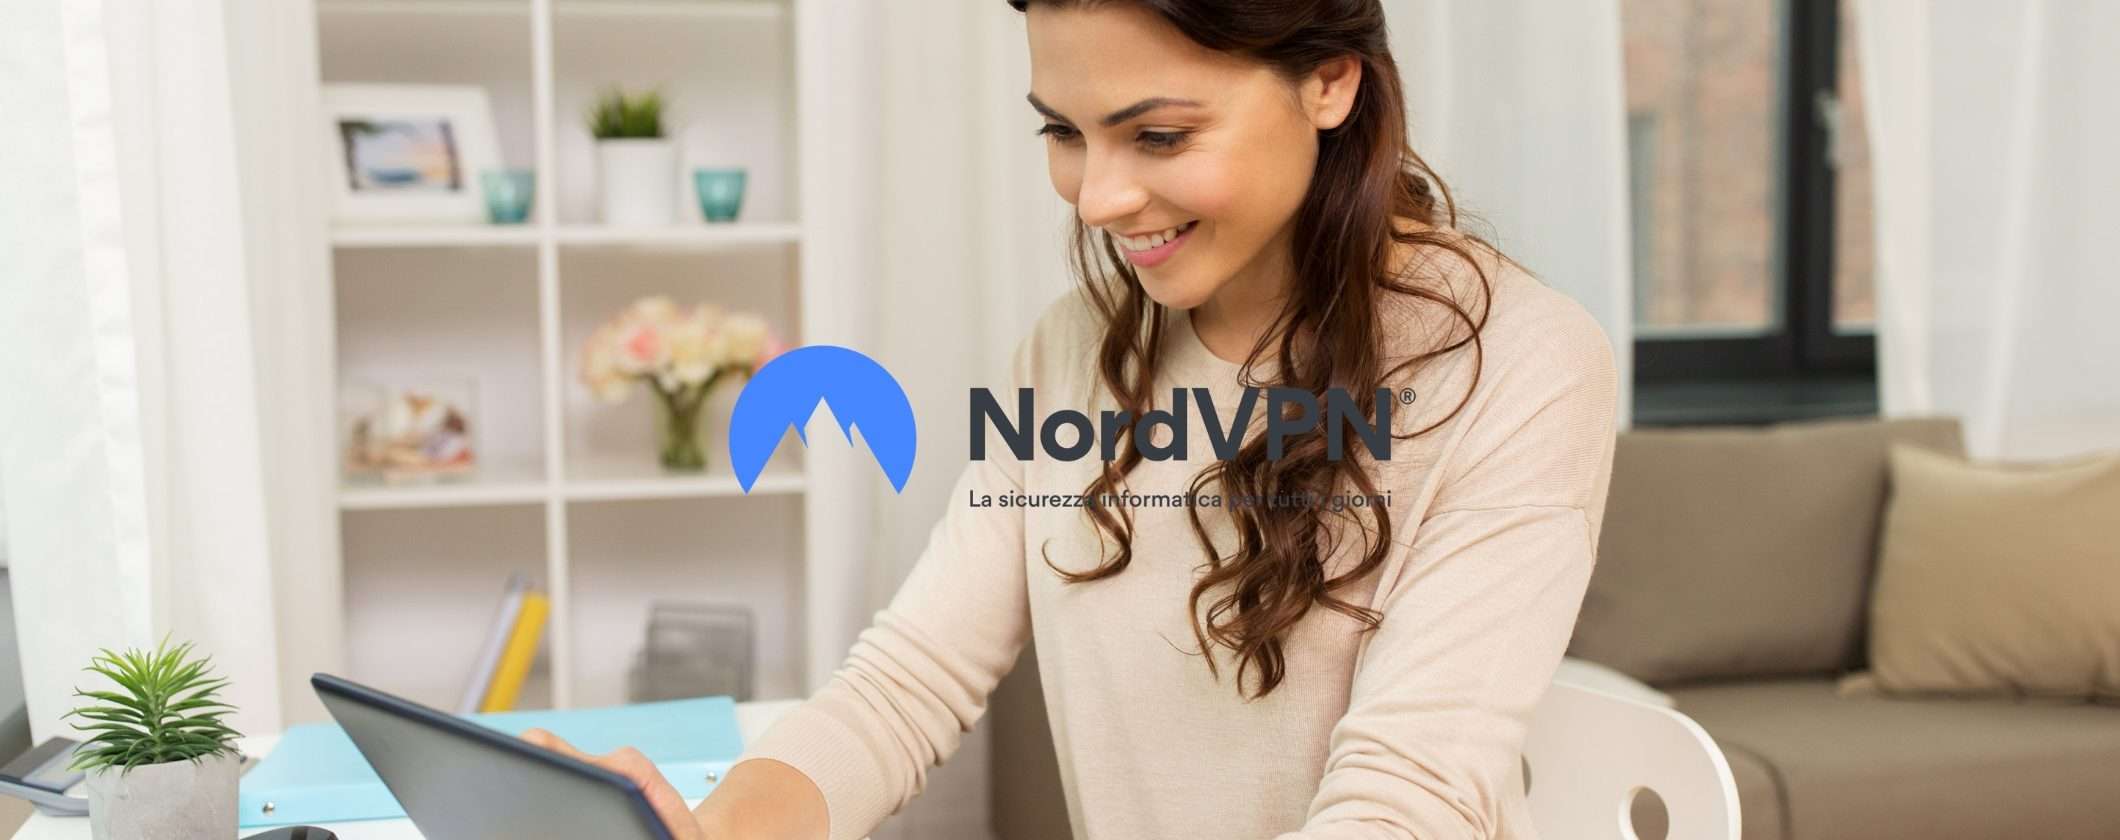 NordVPN migliora la tua sicurezza online